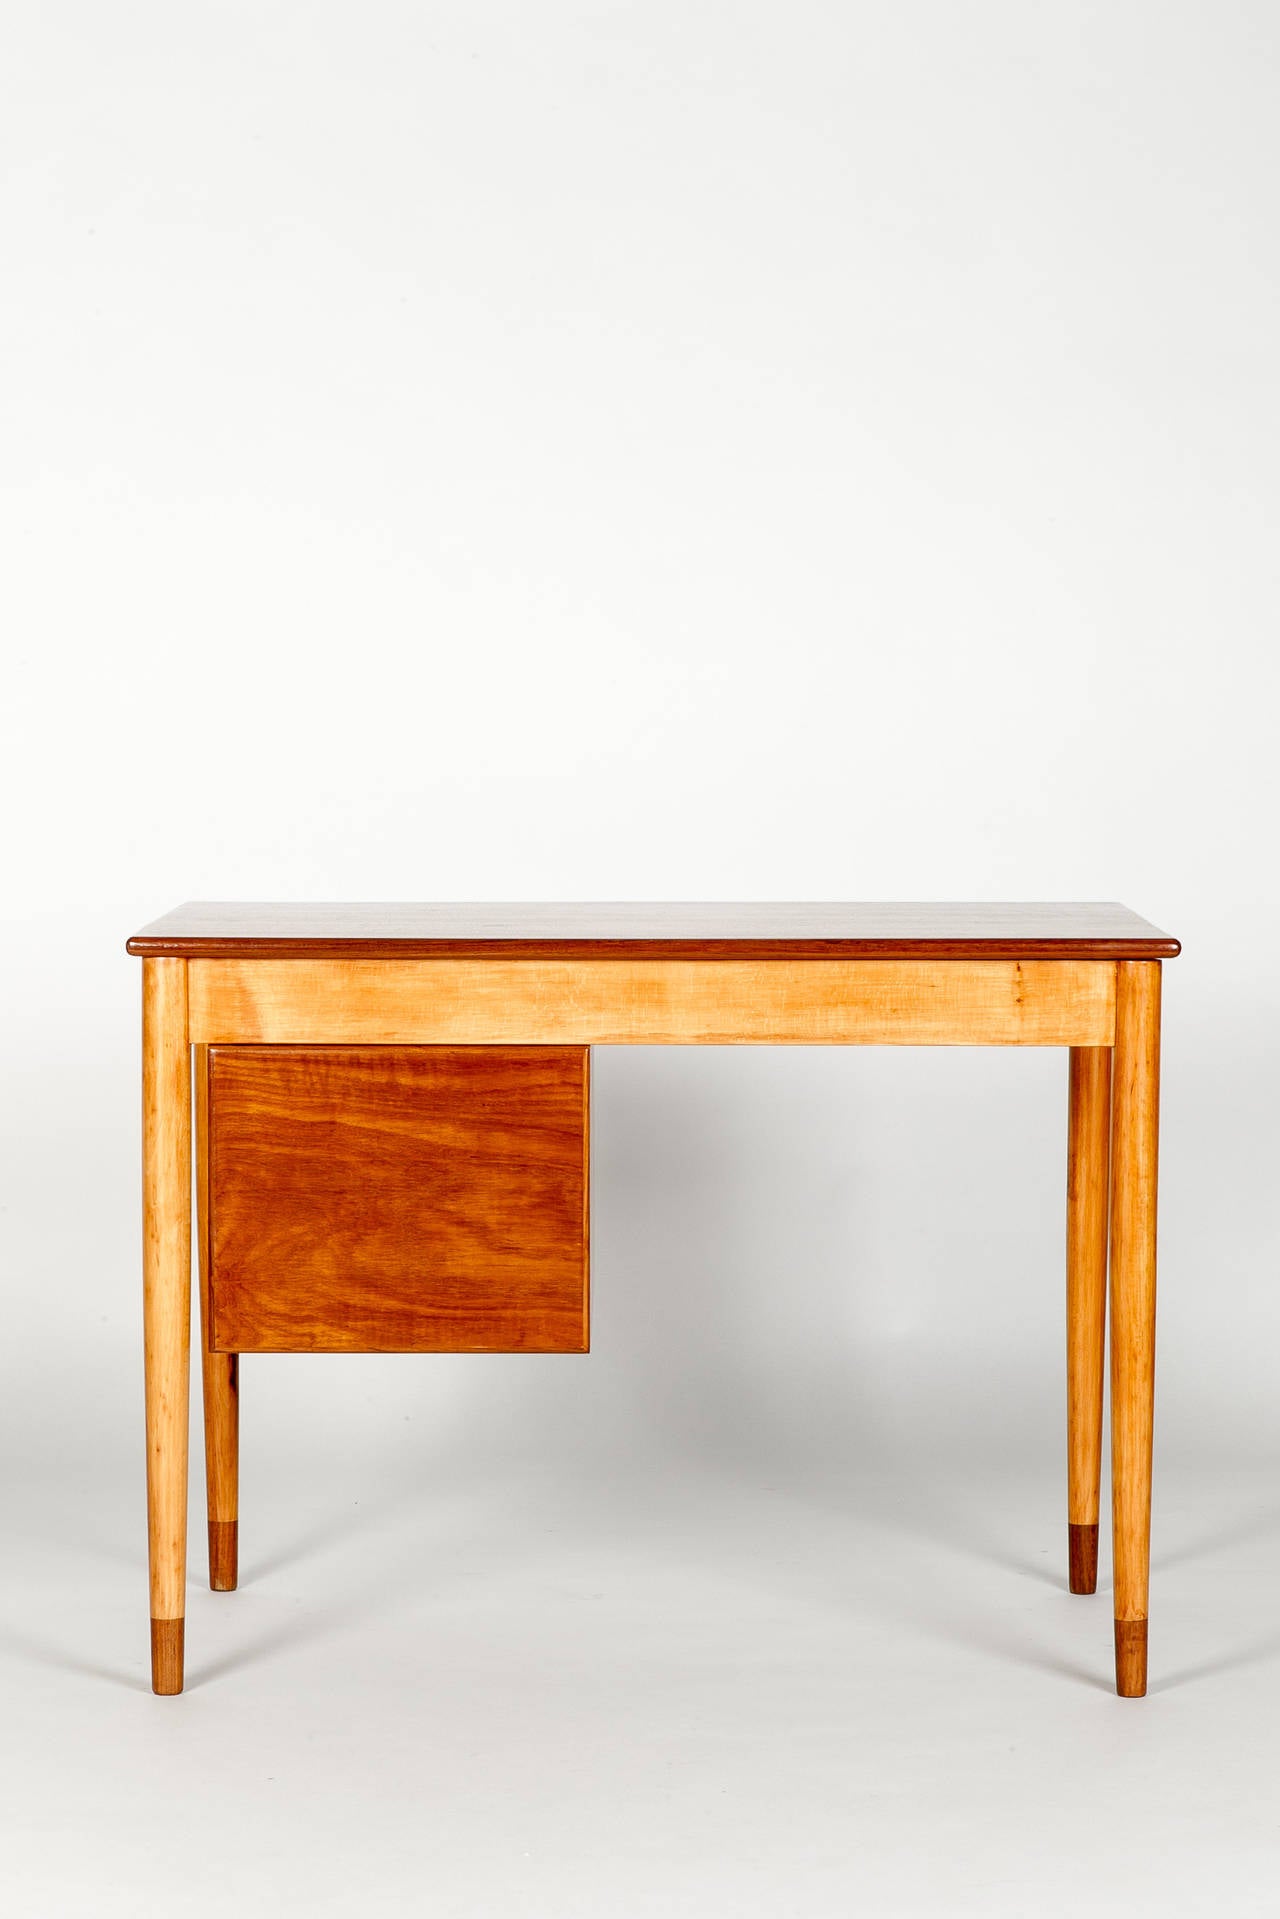 Mid-20th Century Danish Desk by Borge Mogensen Model 131 for Soborg 1950s